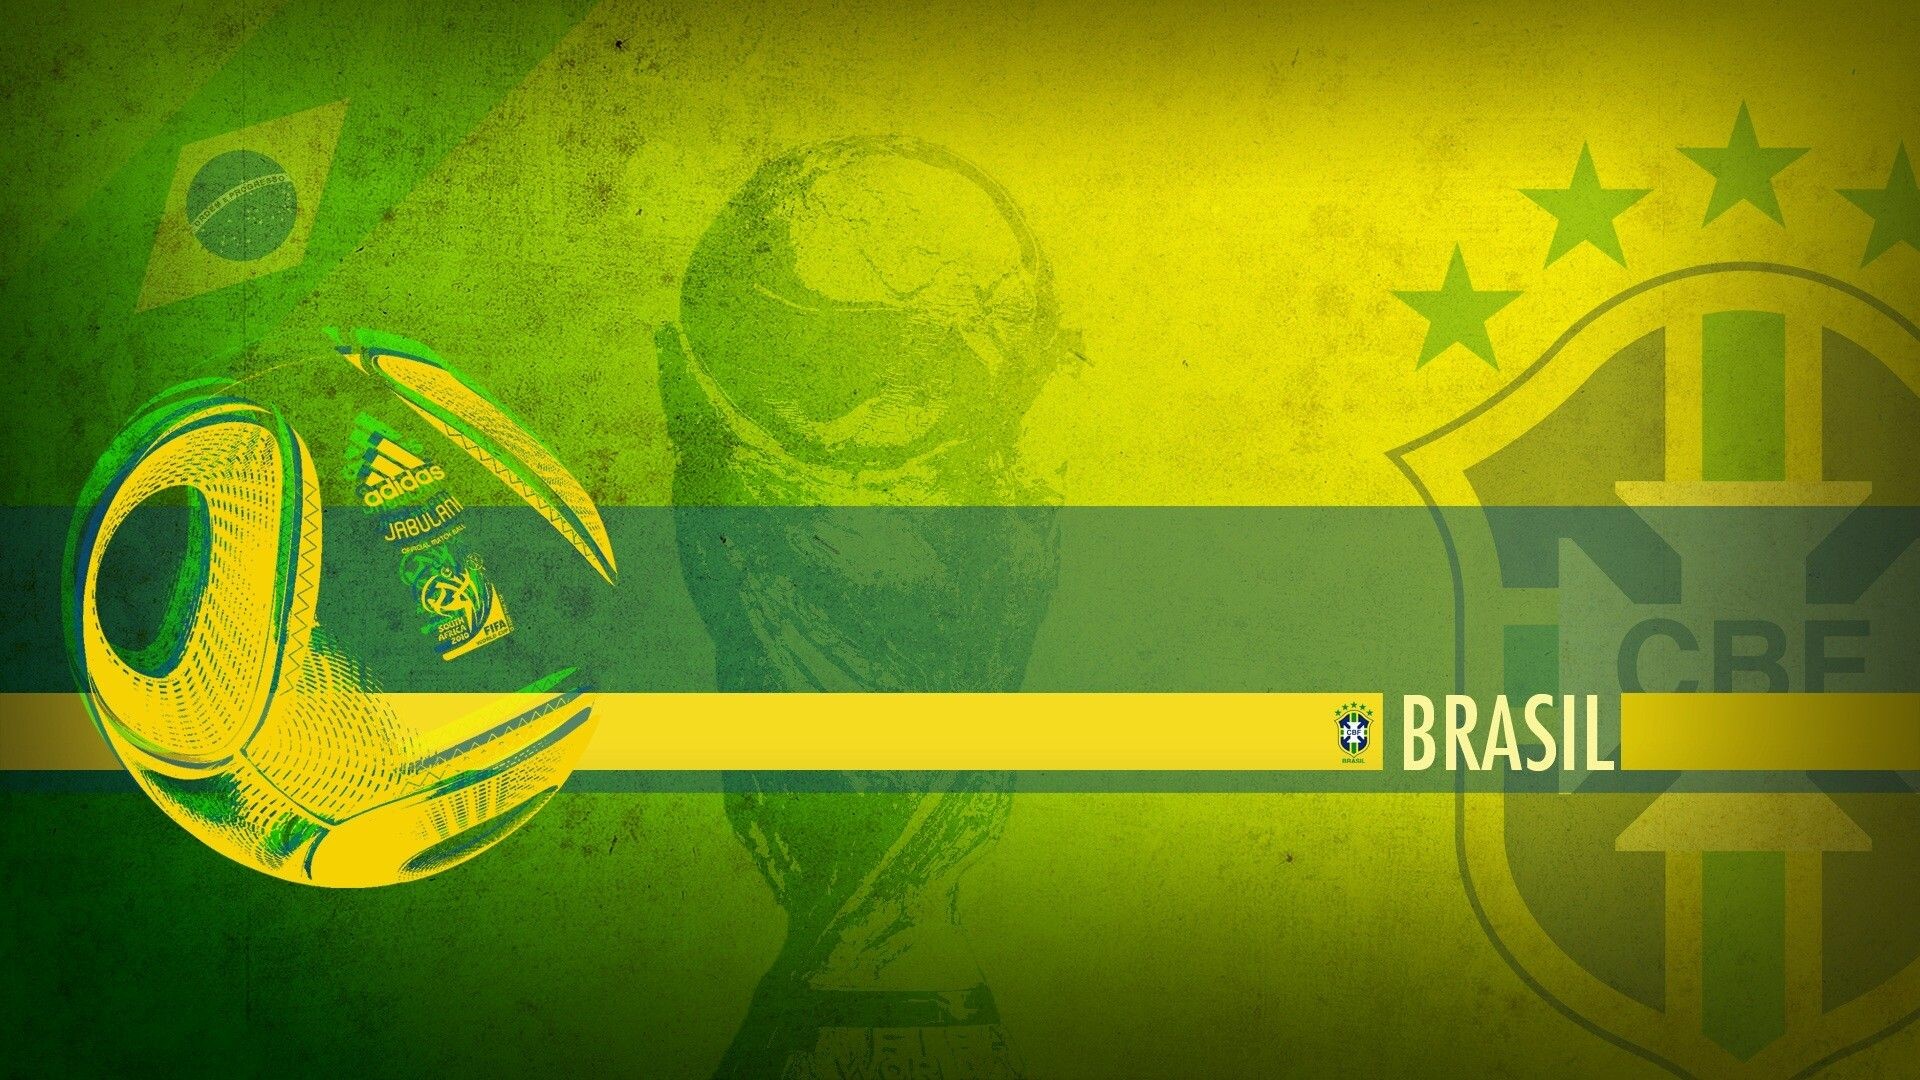 Brazil Football Team Wallpapers  Top 30 Best Brazil Football Team  Wallpapers Download